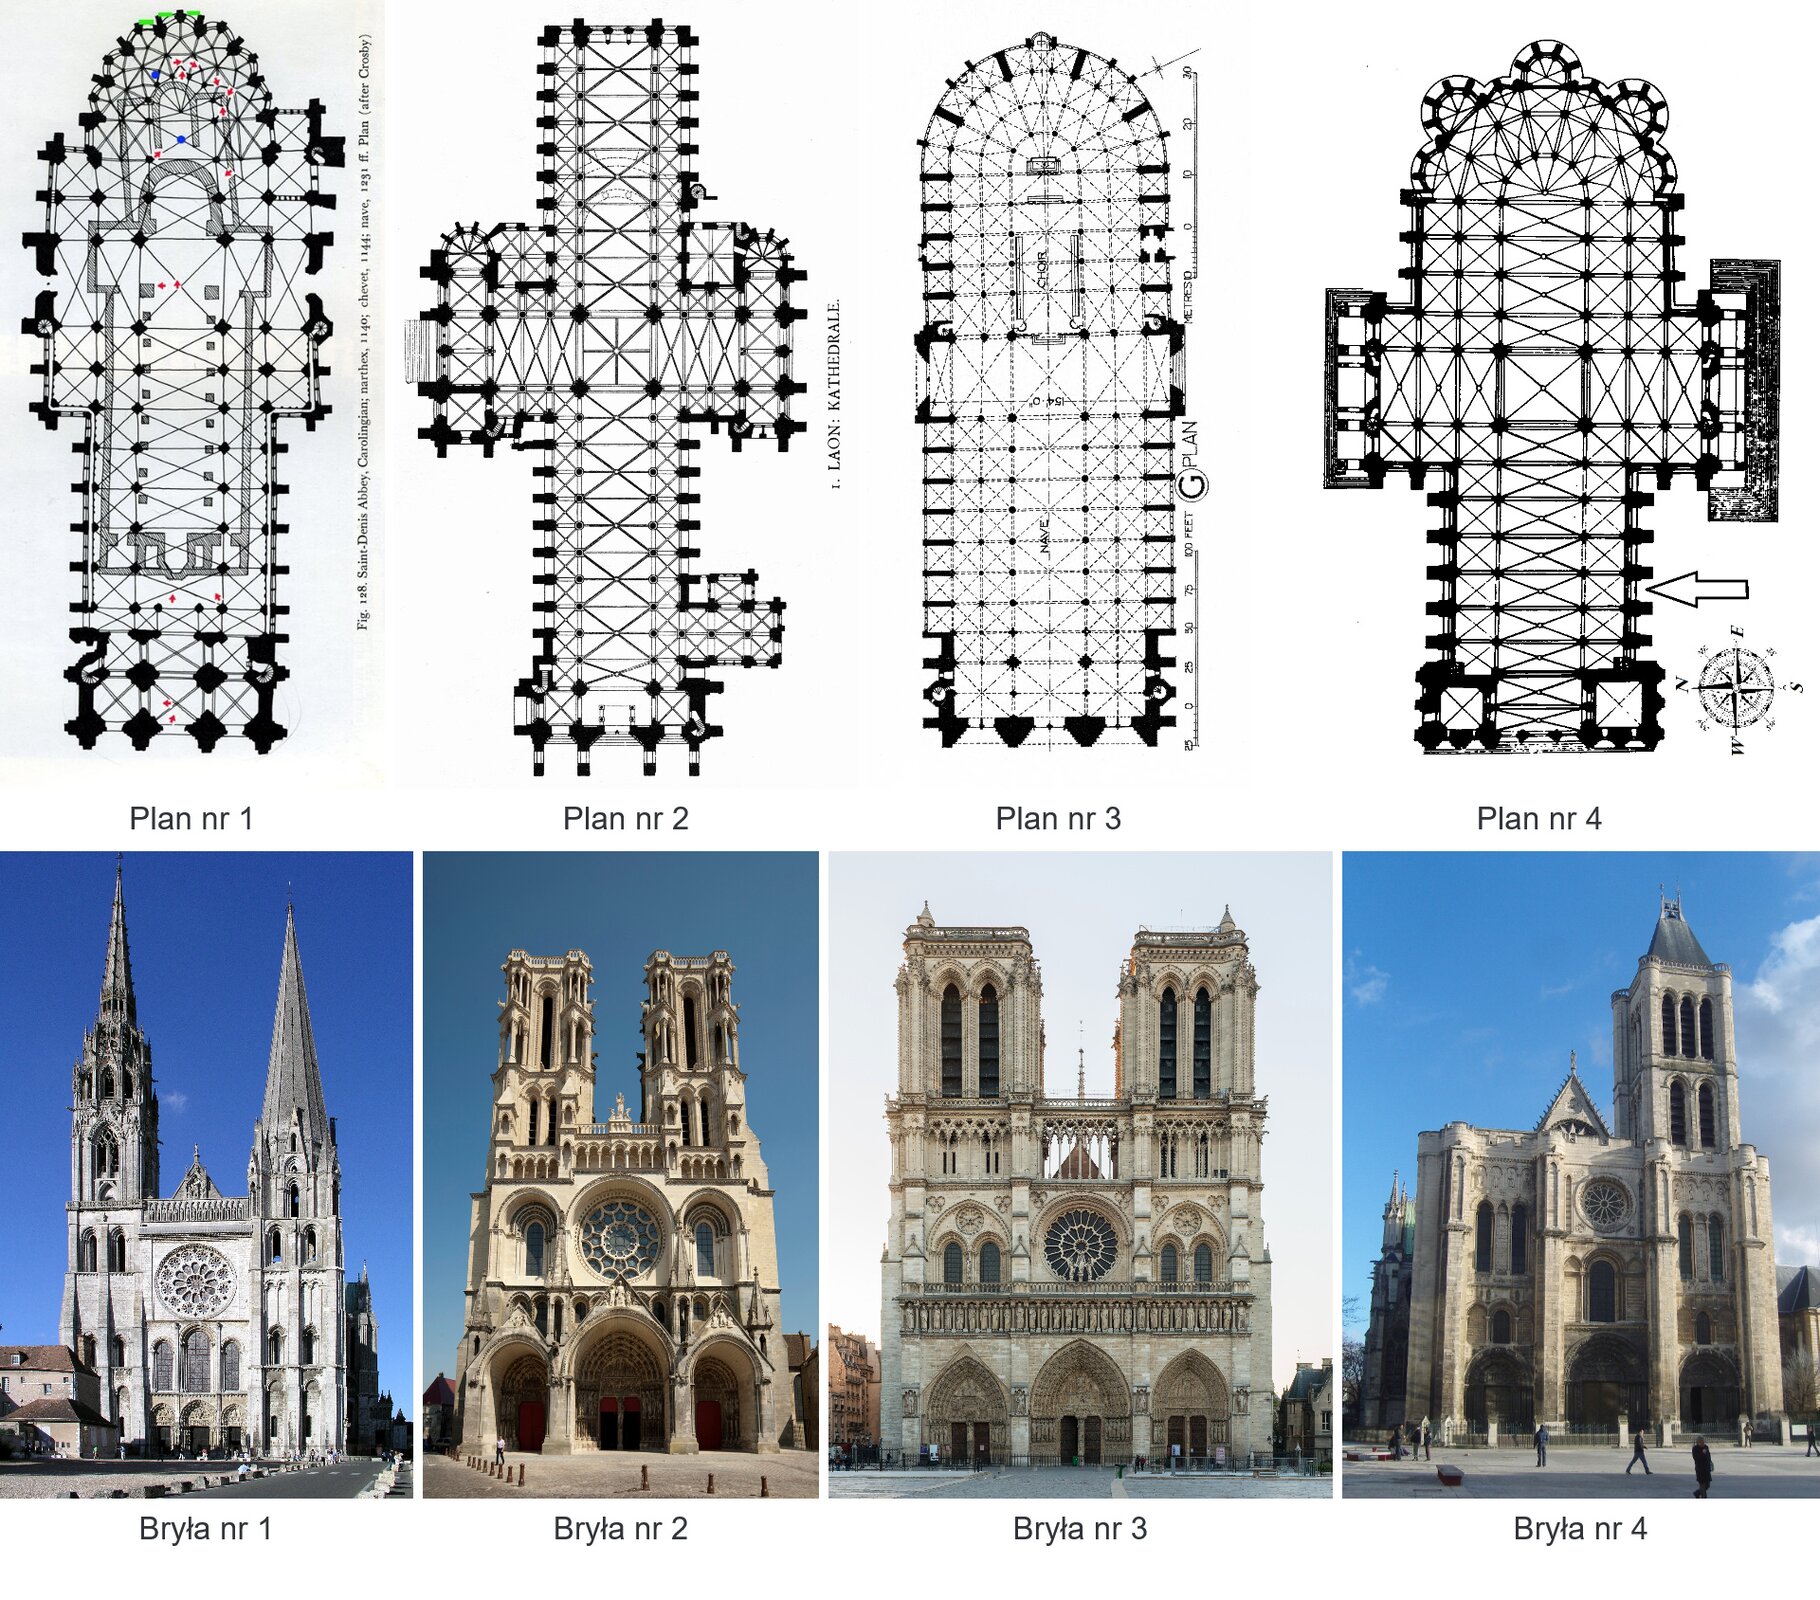 Wymień trzy francuskie katedry omawiane w tym materiale.